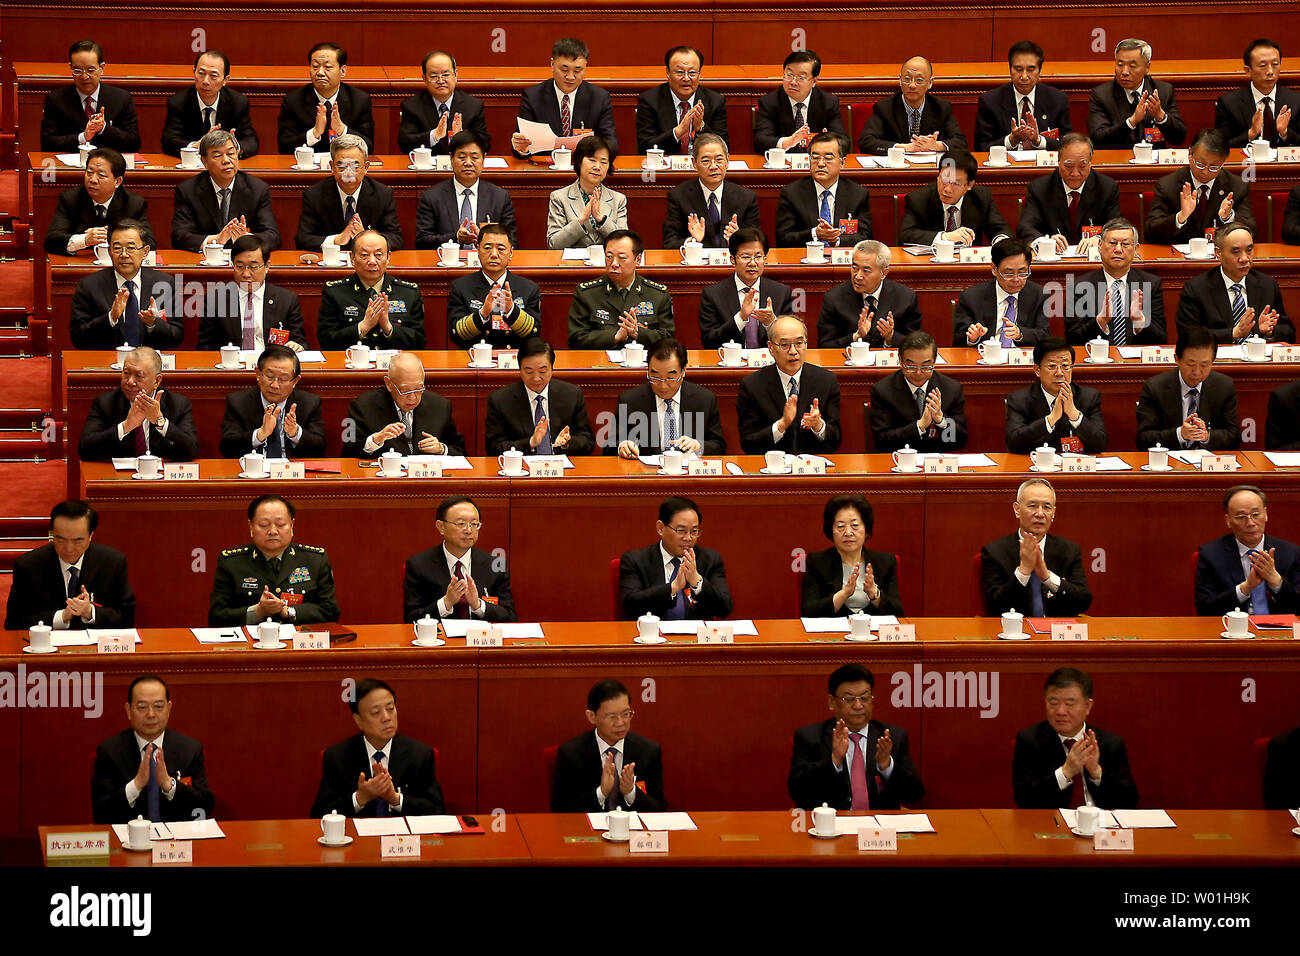 Chinesischen Delegierten begrüßen die Verabschiedung des Gesetzes bei der Abschlussfeier des 13. Nationalen Volkskongresses in der Großen Halle des Volkes in Peking am 15. März 2019. Chinas Spitzenpolitiker und Delegierte auf verschiedene Gesetze während der Jahrestagung der chinesischen Gesetzgebung gestimmt. Foto von Stephen Rasierer/UPI Stockfoto